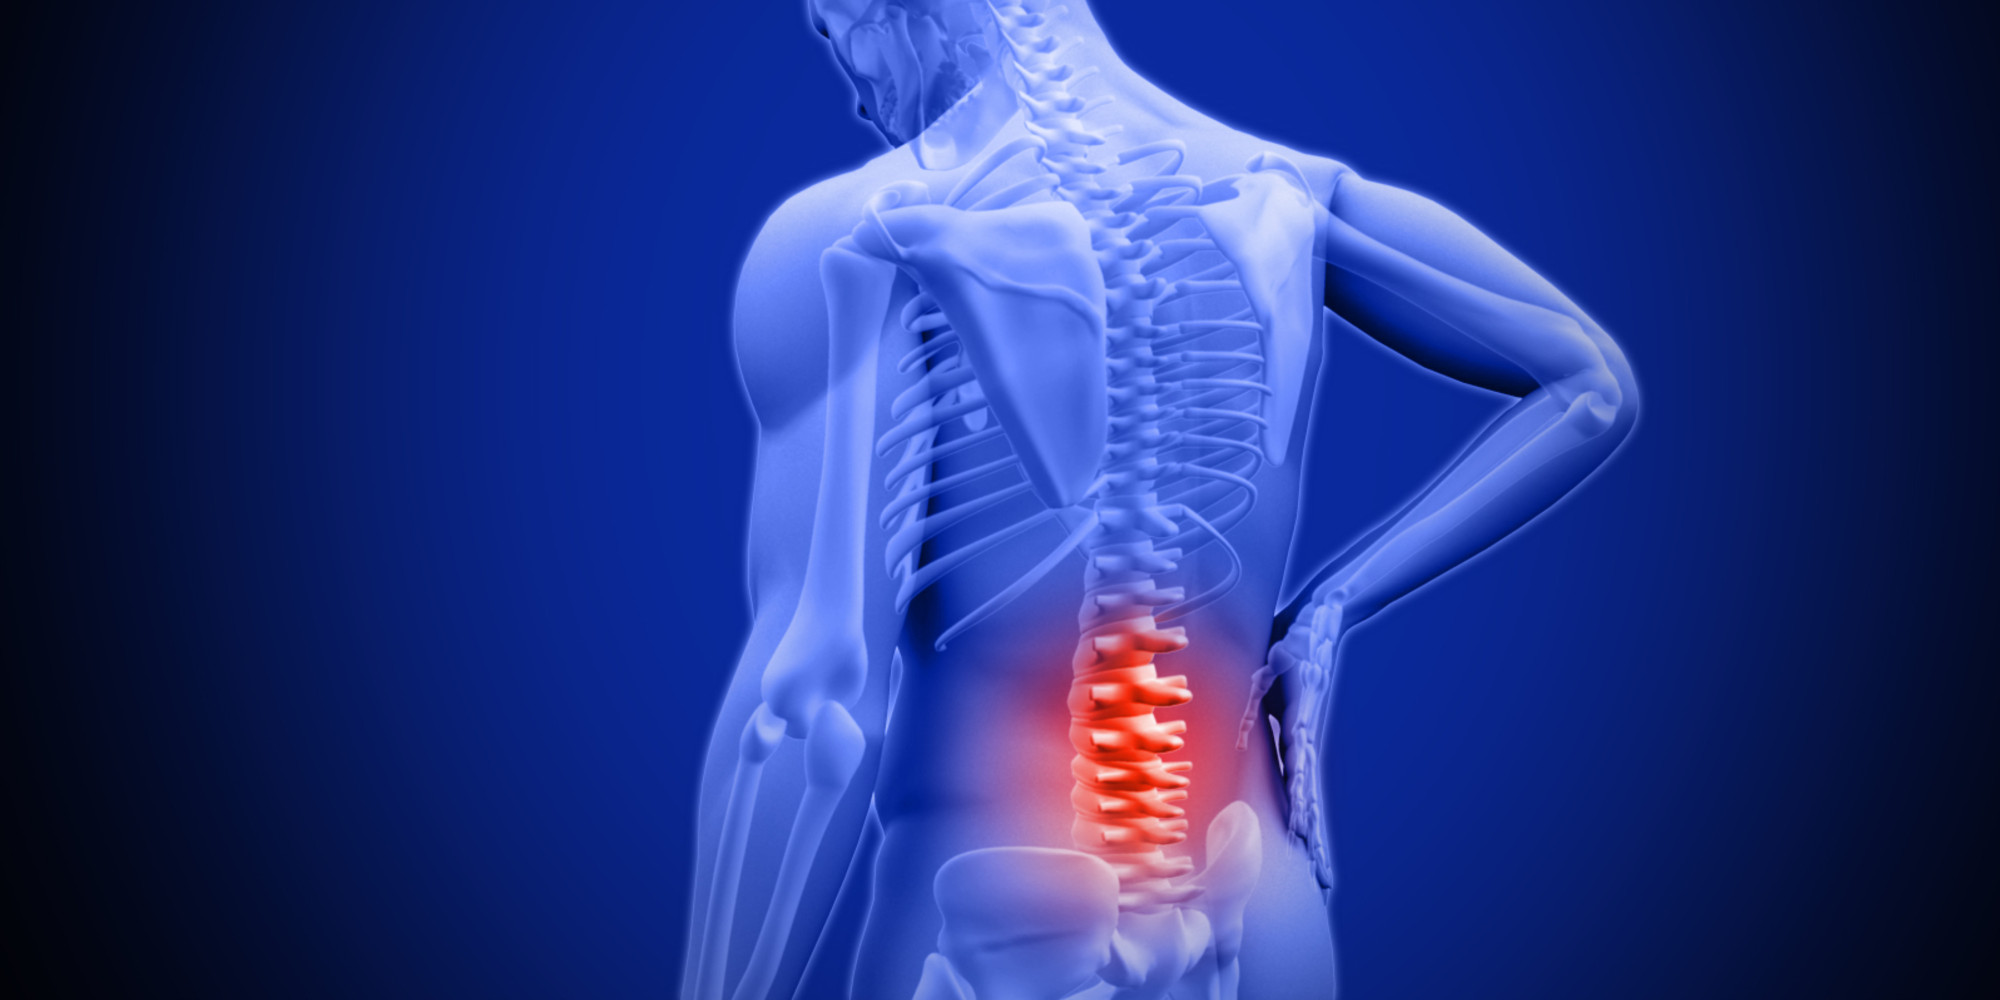 Low back pain - The Lancet